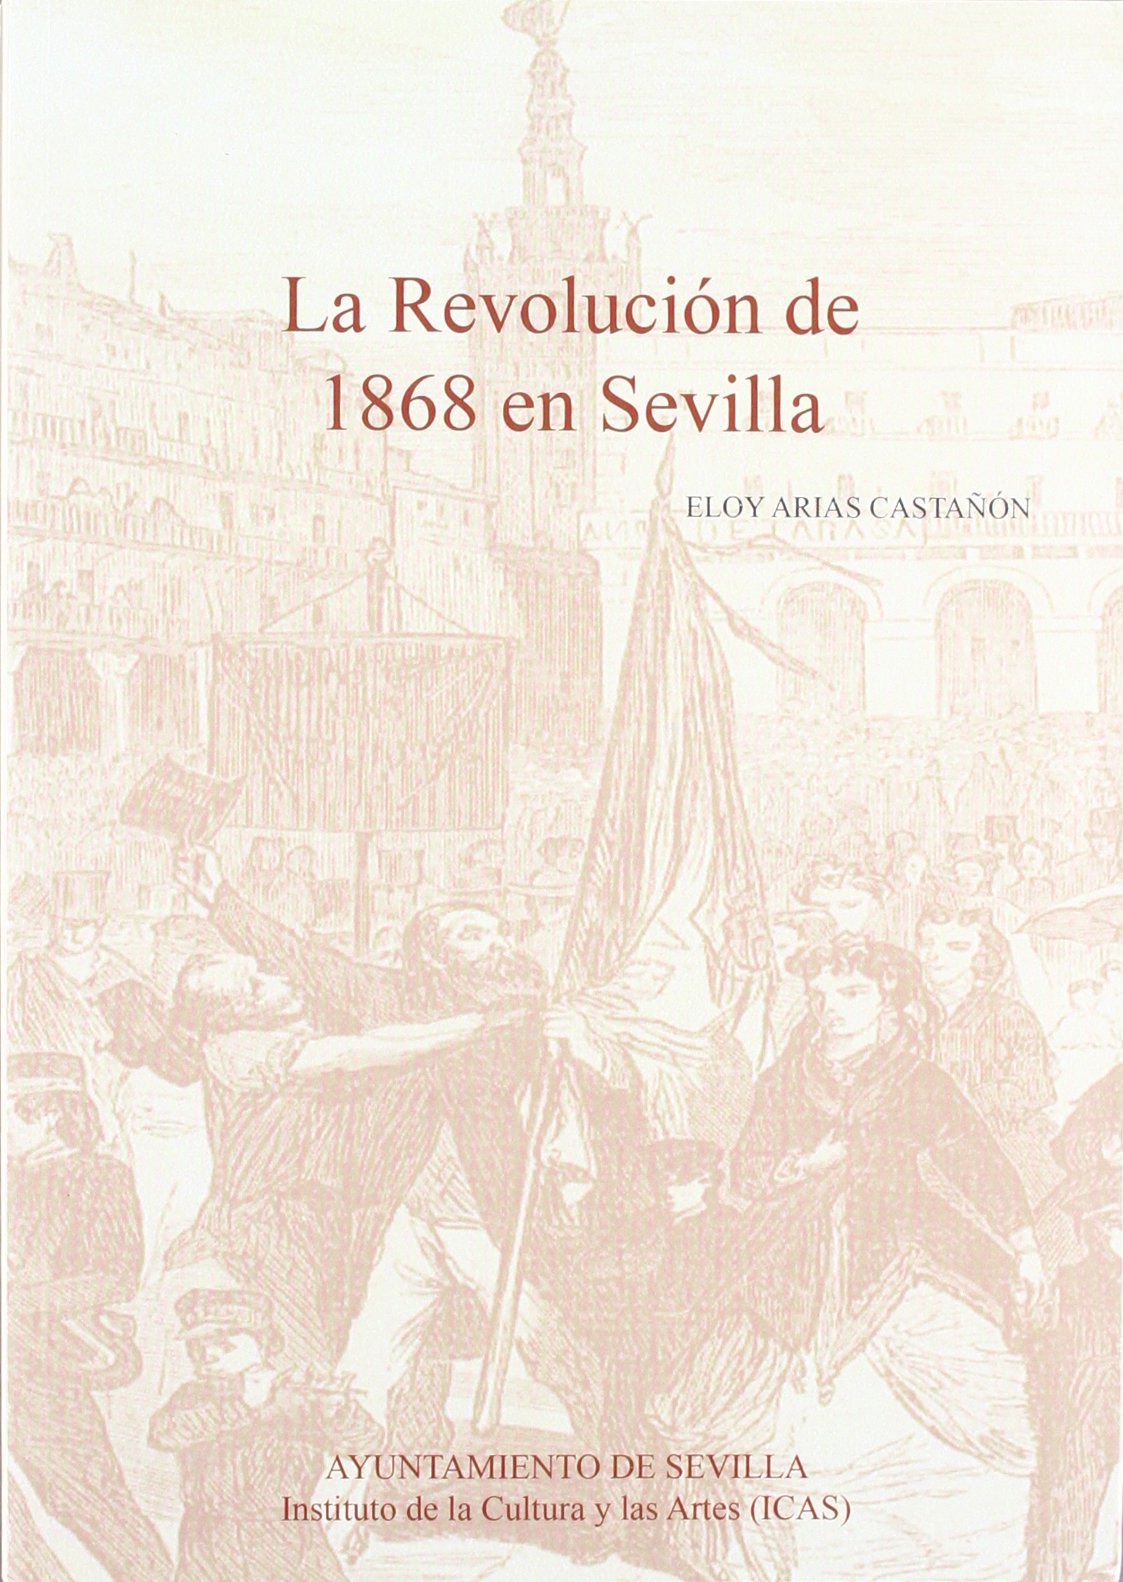 Imagen de portada del libro La Revolución de 1868 en Sevilla